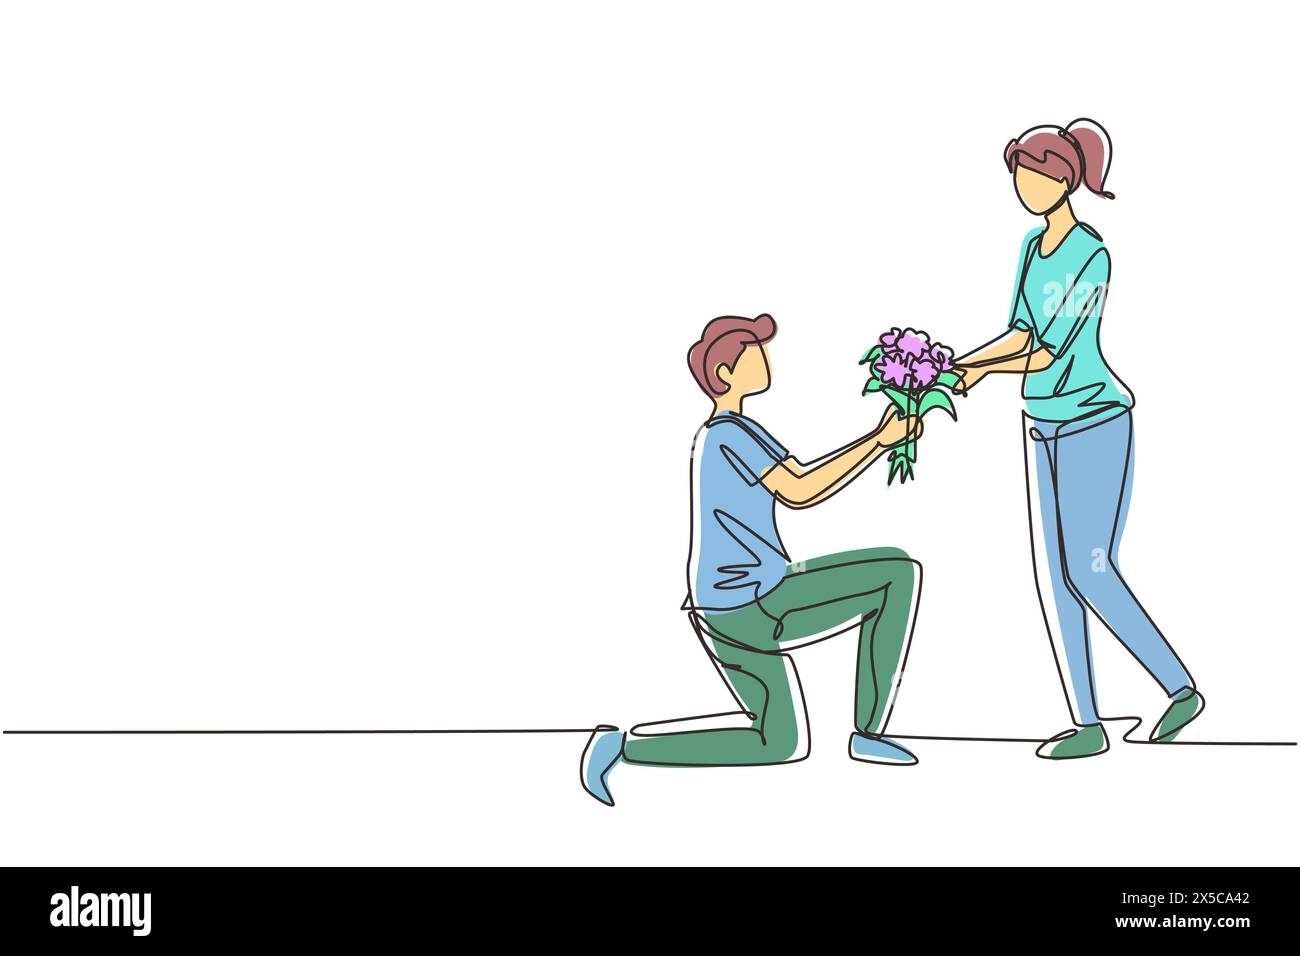 Eine einzige Linie, der Mann auf dem Knie zeichnet und der Frau einen Heiratsantrag mit Blumenstrauß macht. Junge verliebt, der Blumen schenkt. Glückliches Paar, das sich auf die Hochzeit vorbereitet Stock Vektor